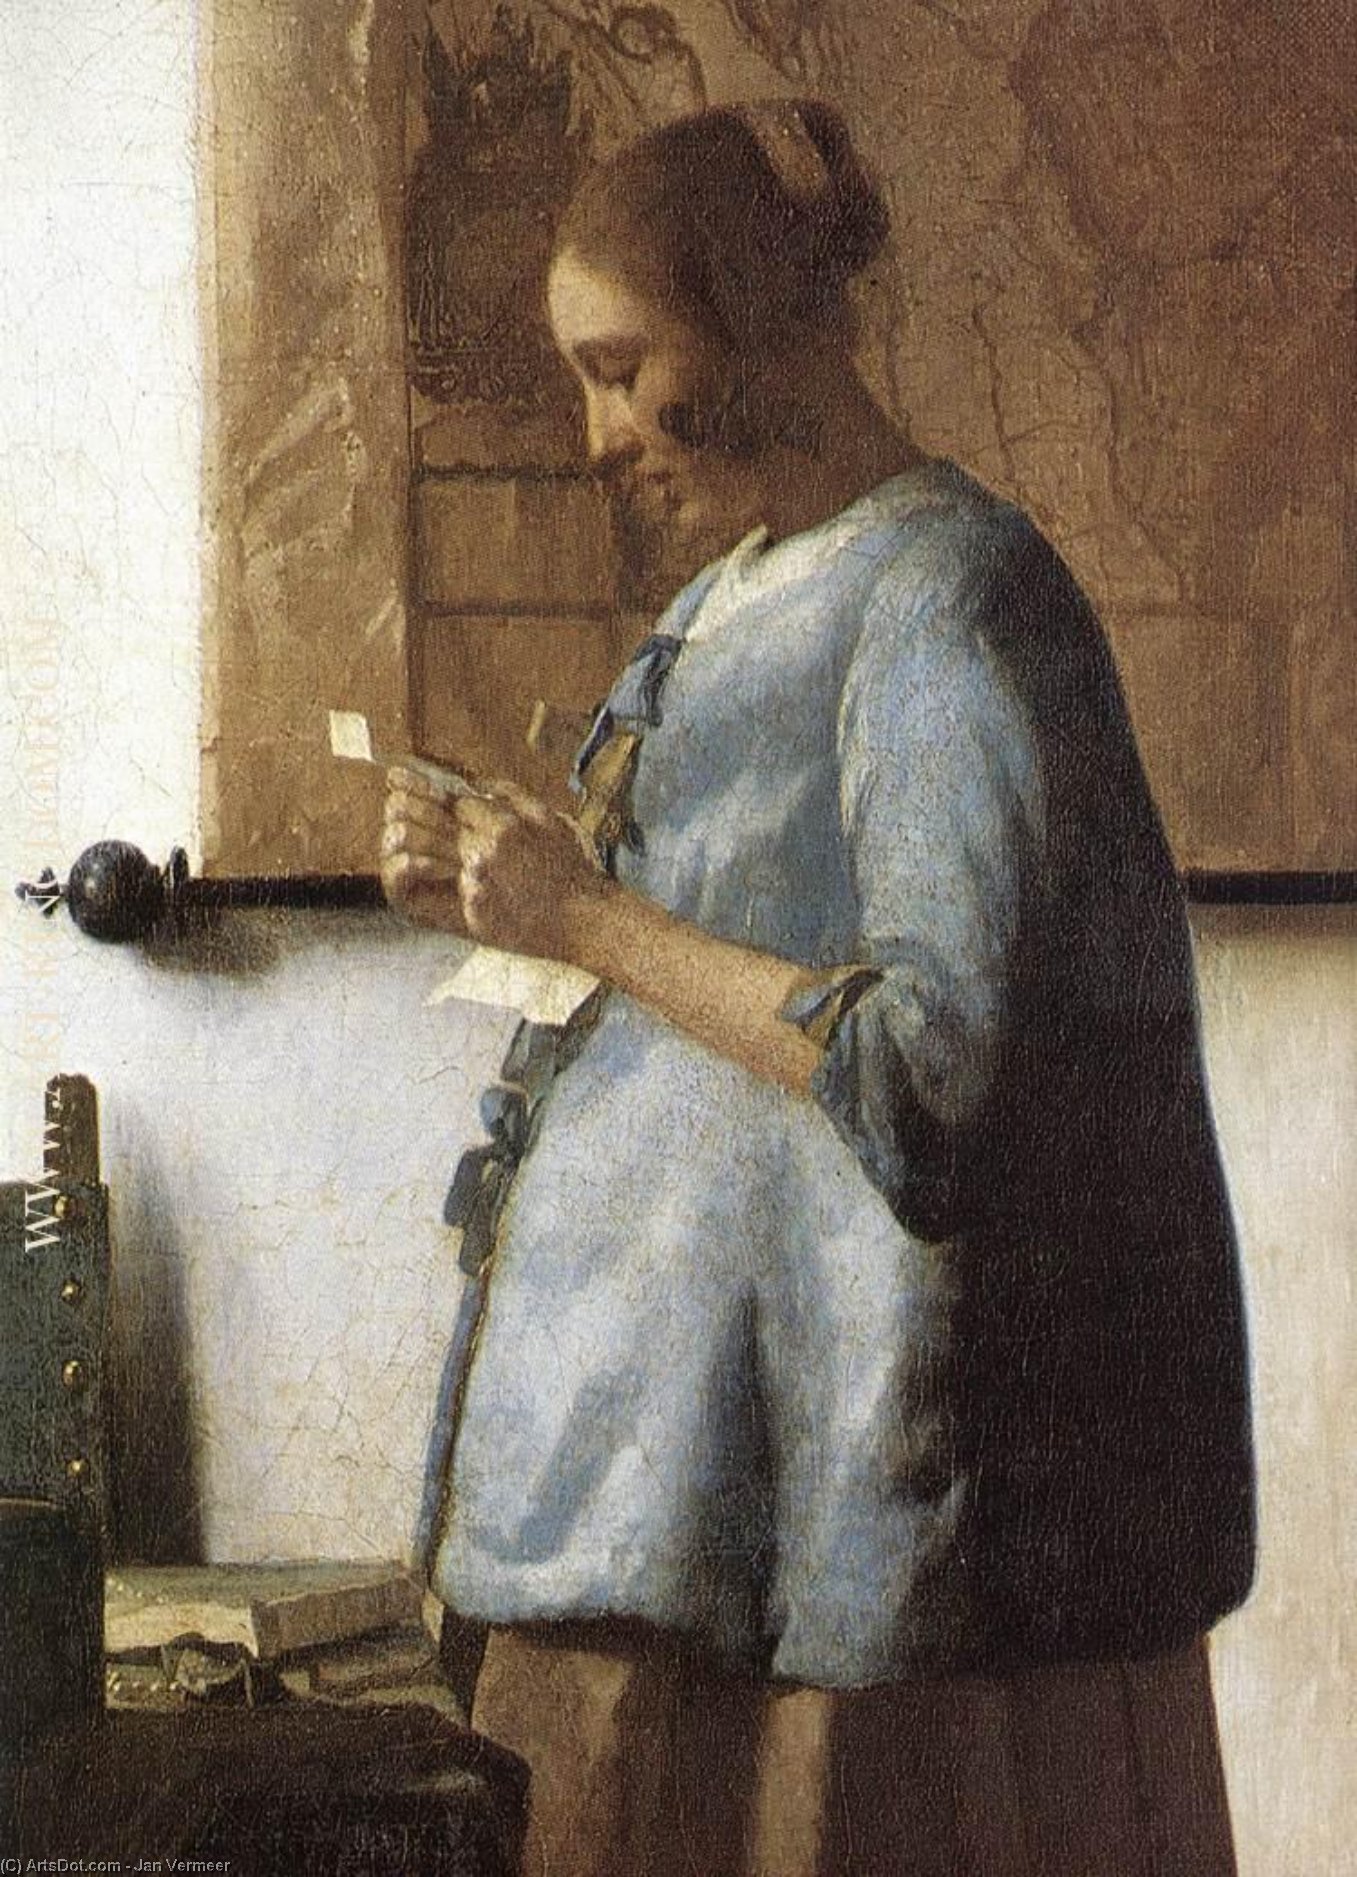 WikiOO.org - אנציקלופדיה לאמנויות יפות - ציור, יצירות אמנות Jan Vermeer - Woman in Blue Reading a Letter (detail)